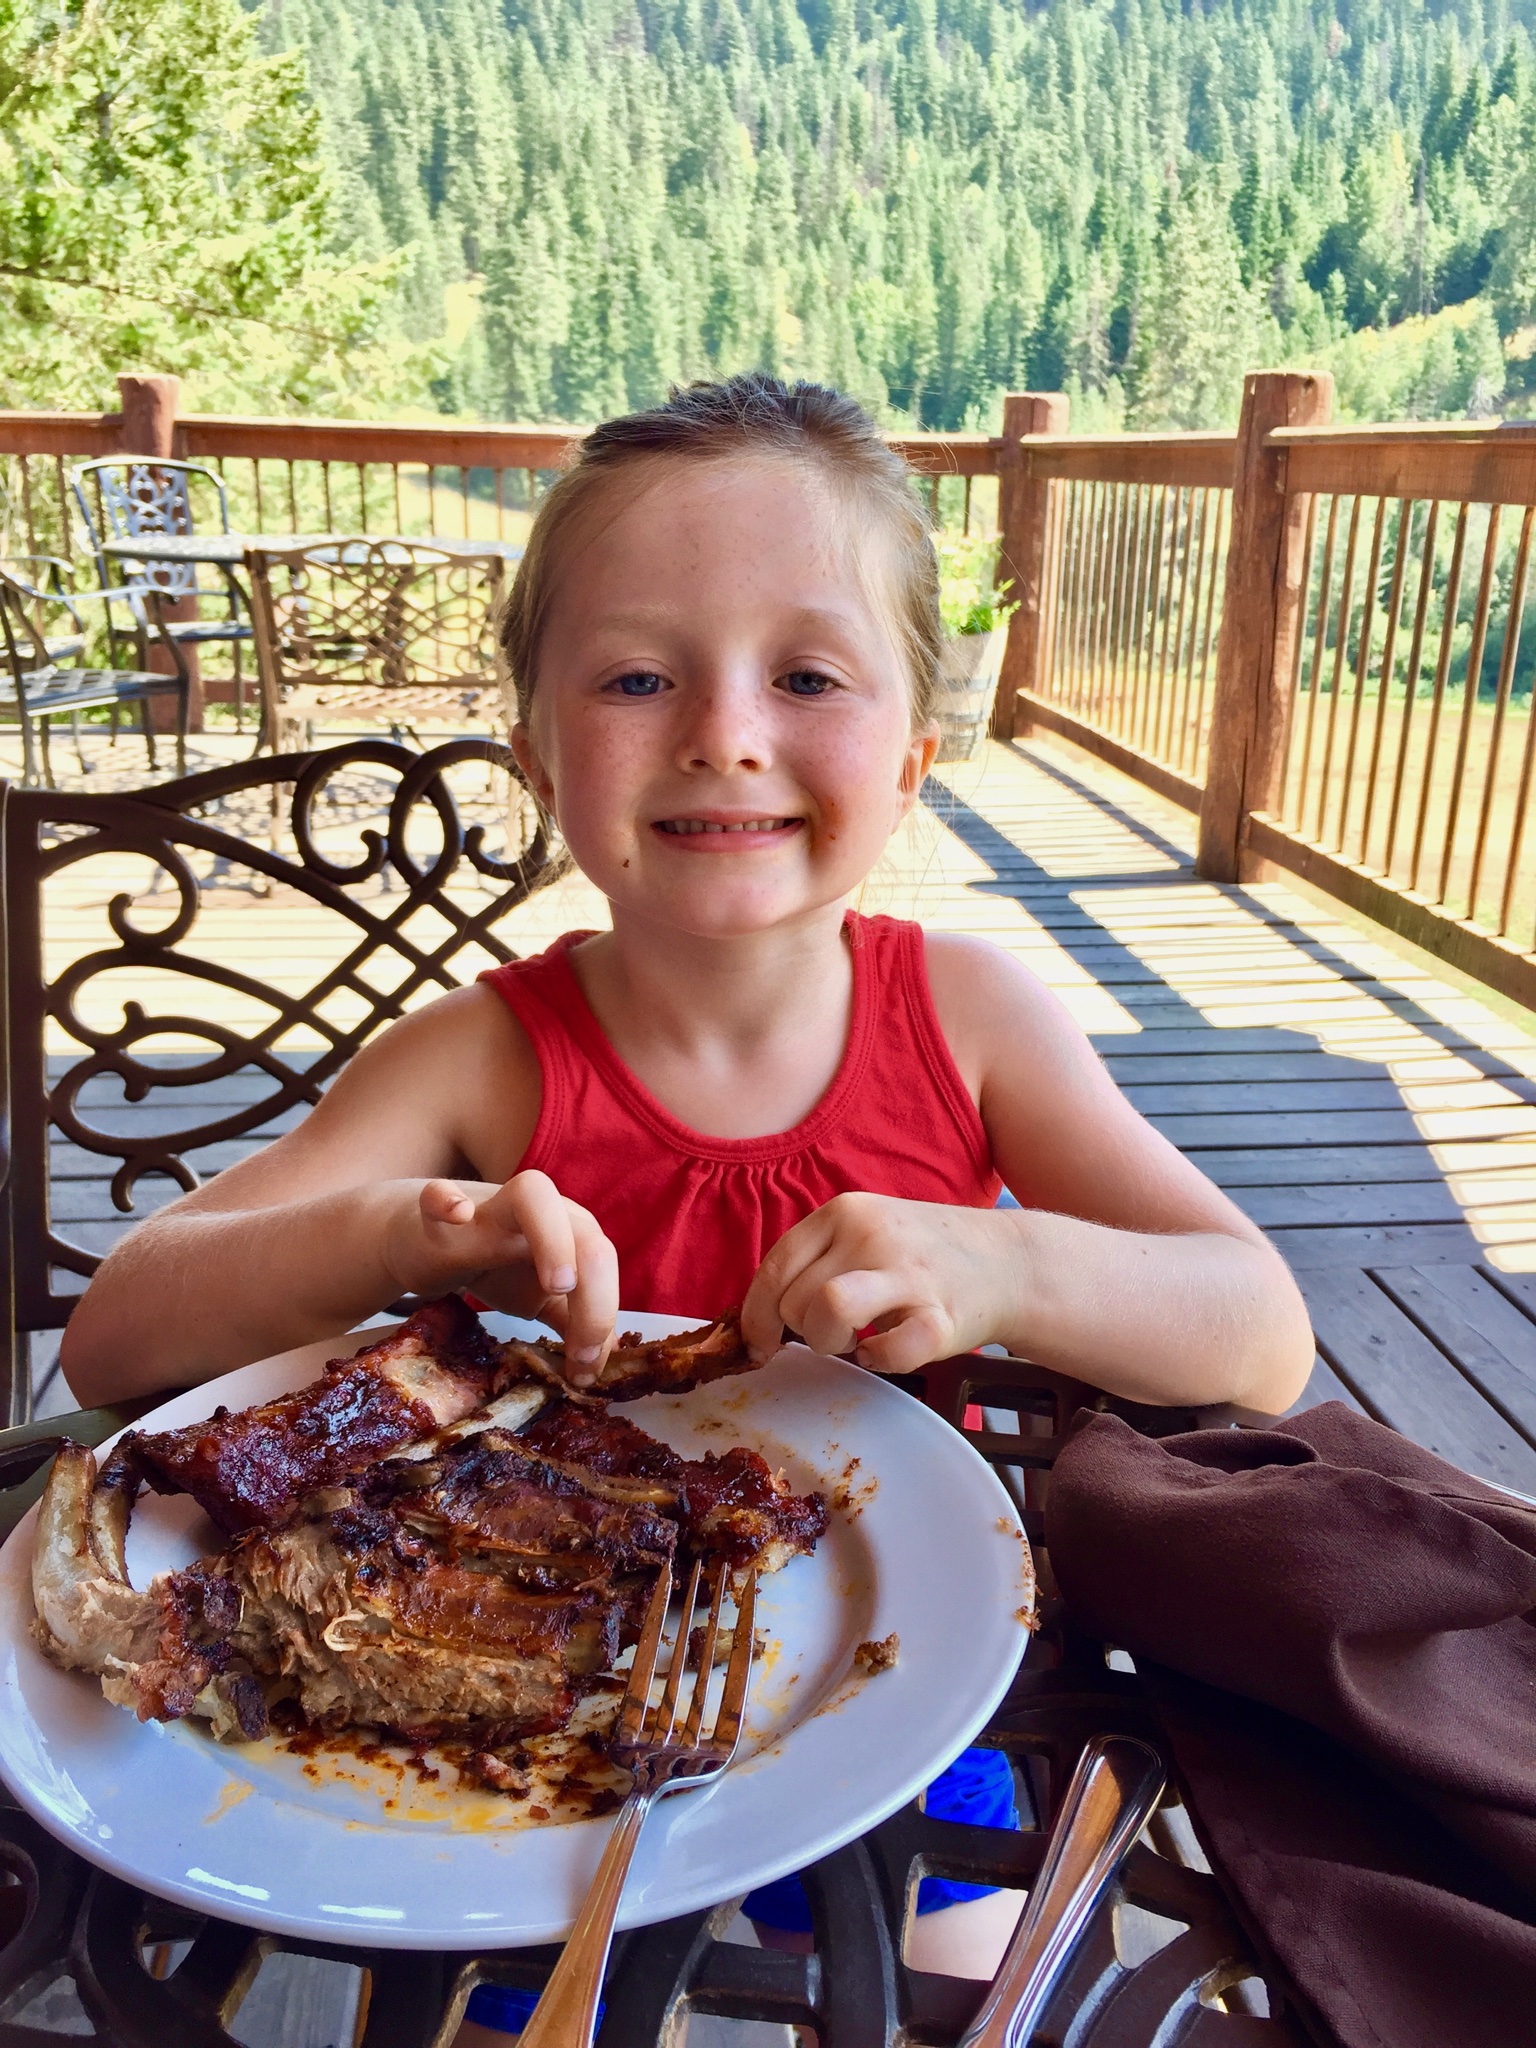 Young girl eating ribs